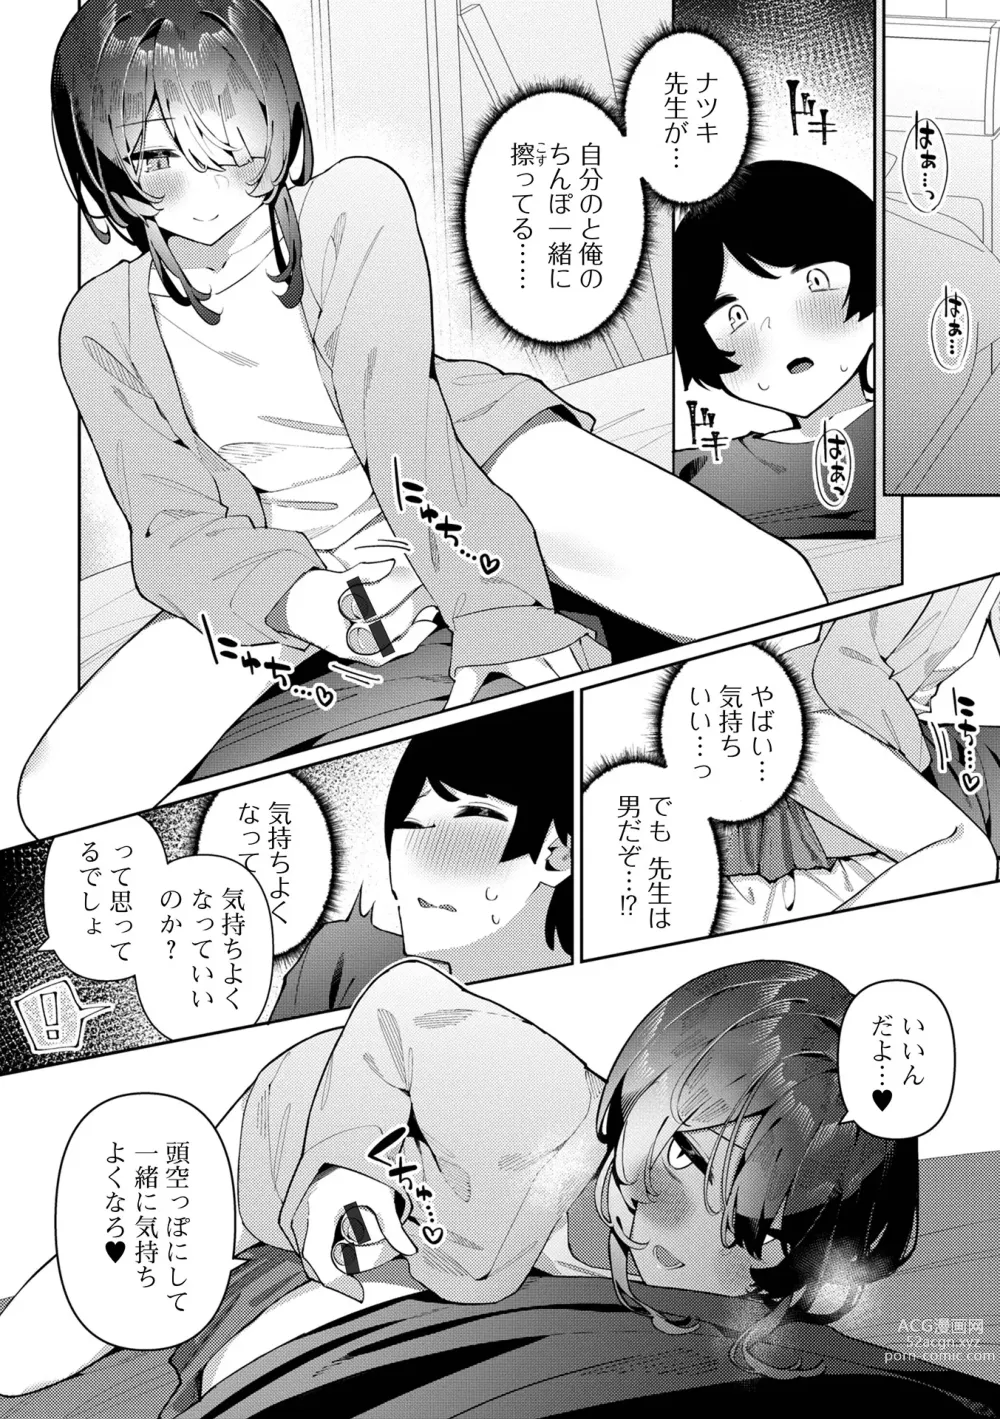 Page 8 of manga Gekkan Web Otoko no Ko-llection! S Vol. 90